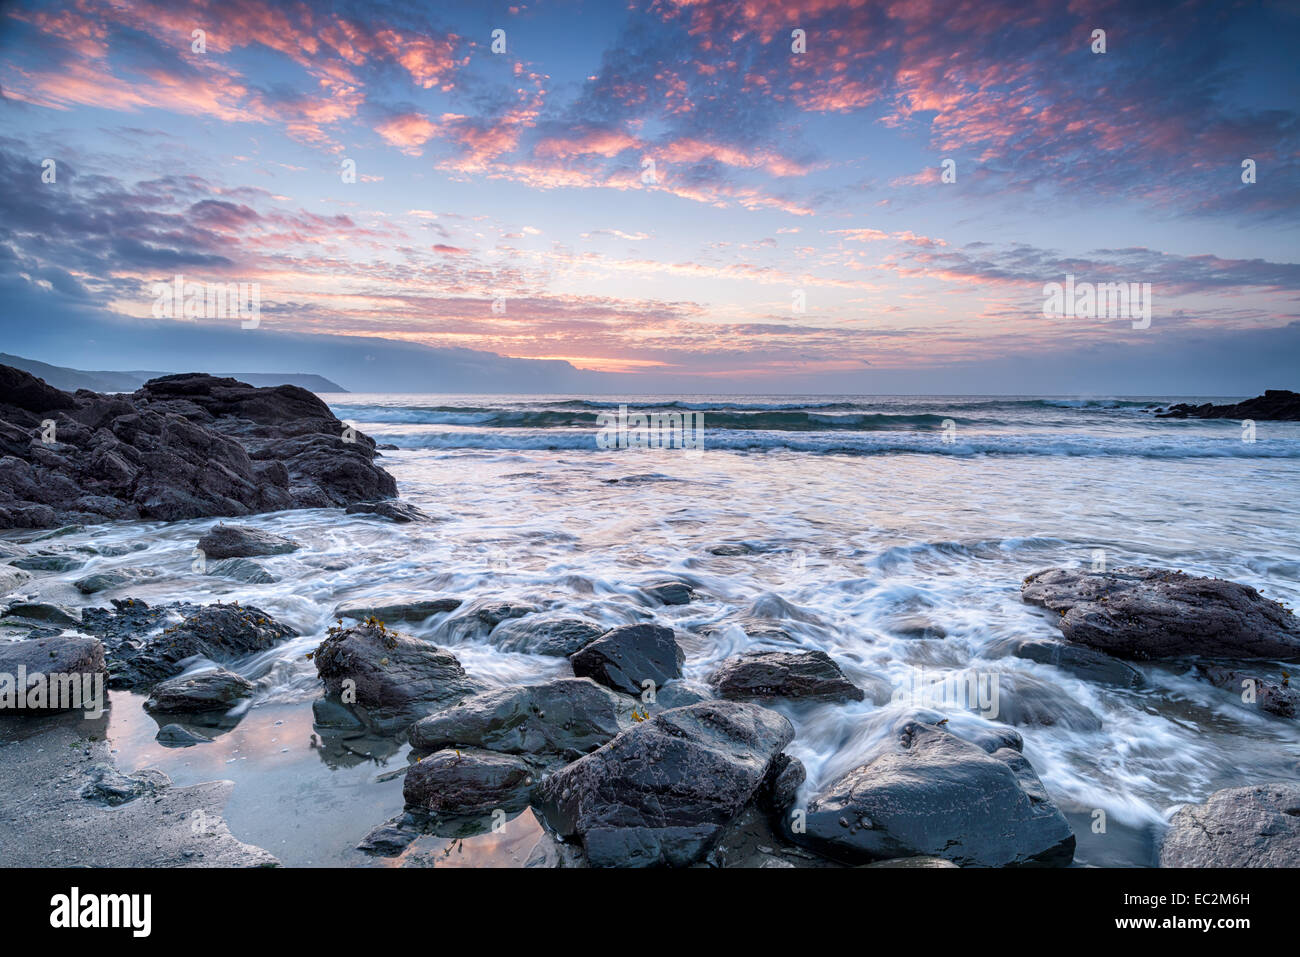 Beautiful sunrise at Portholland on the Cornwall coast Stock Photo